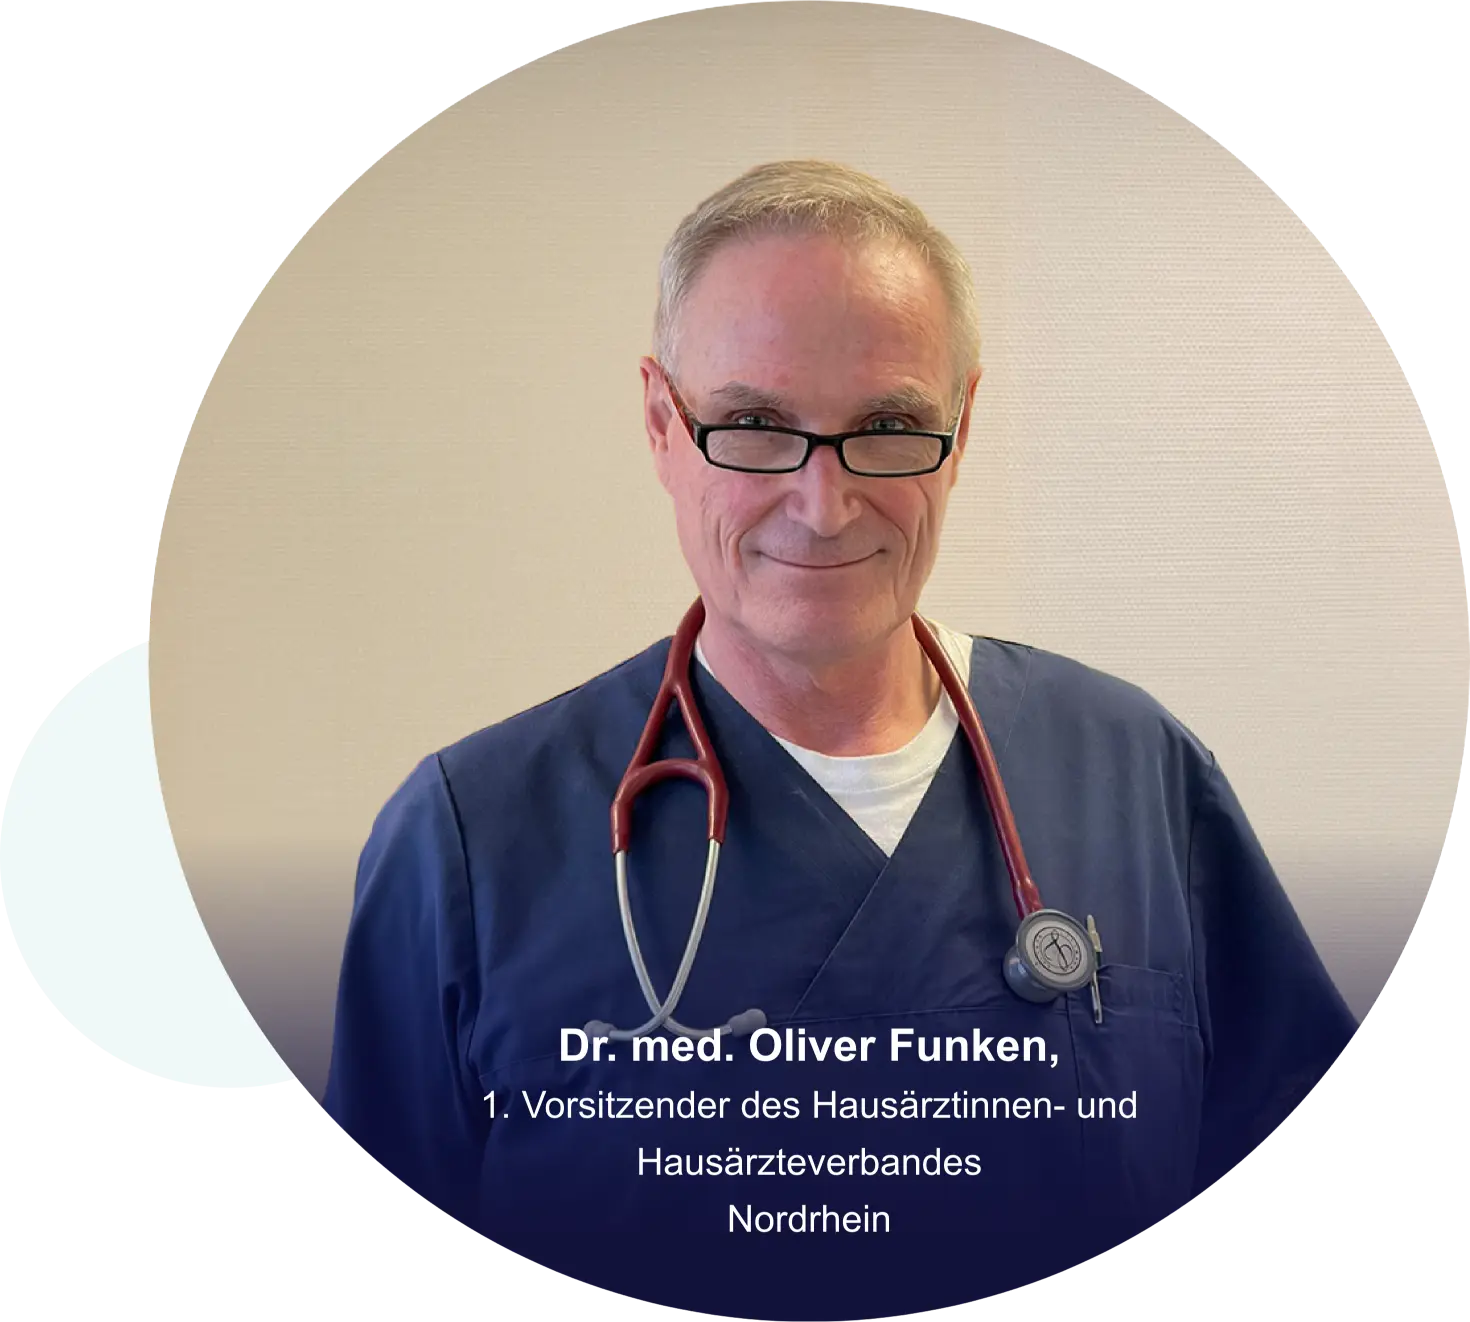 Dr. med. Oliver Funken